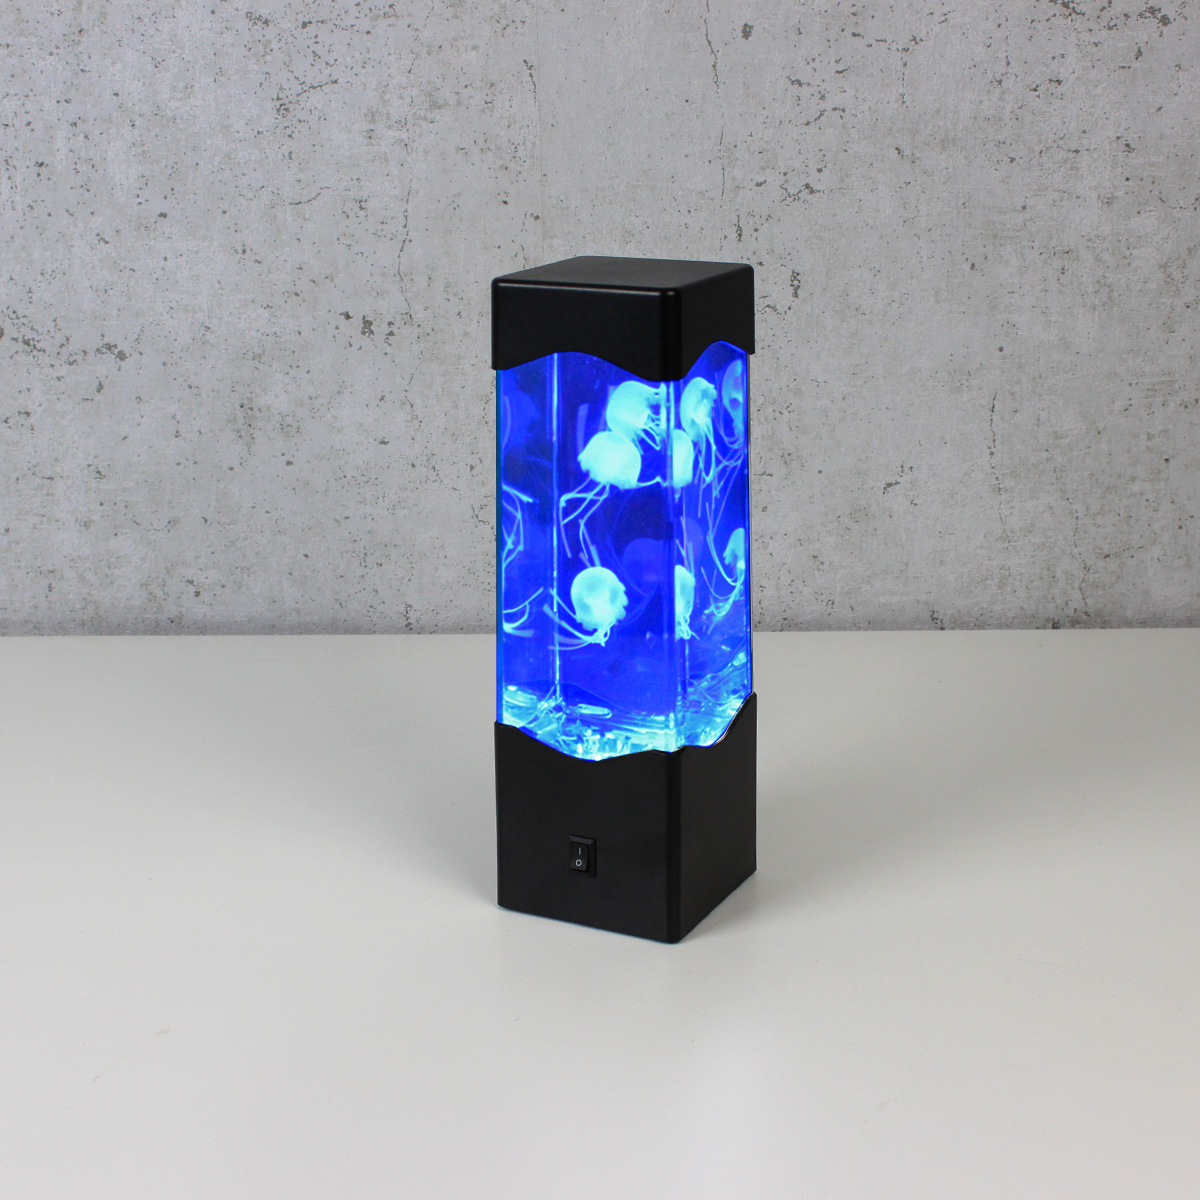 Jellyfish Lampe bunt - Dekoleuchte - USB + Batteriebetrieb (3 x schwimmende Quallen) - RGB